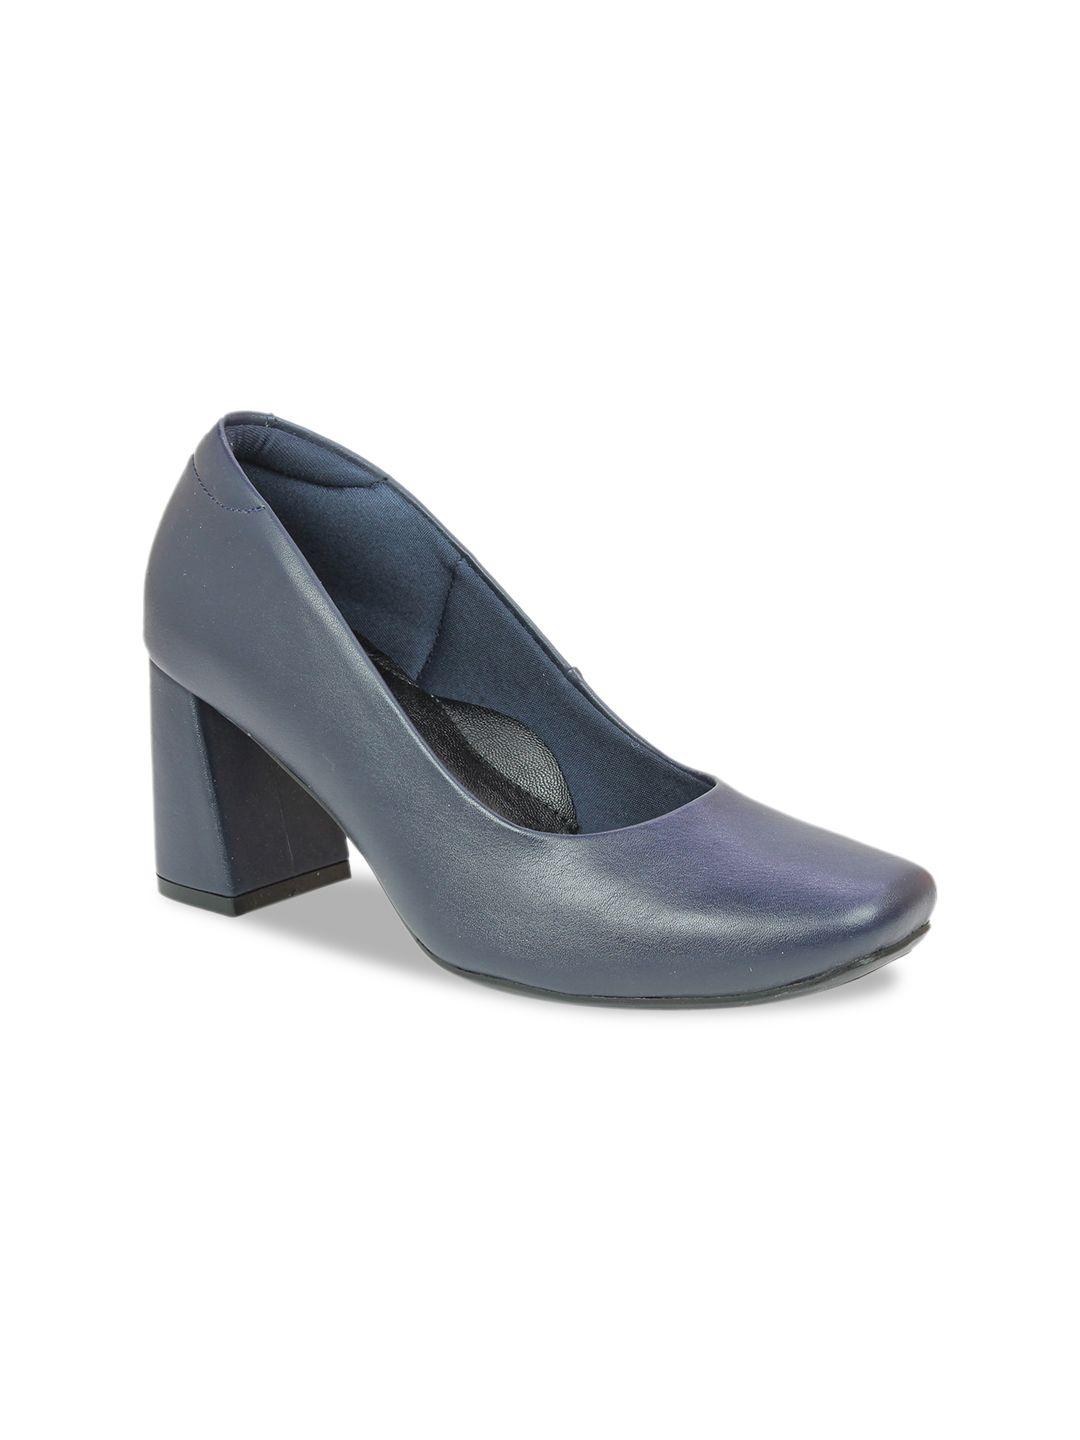 inc 5 women navy blue block heels